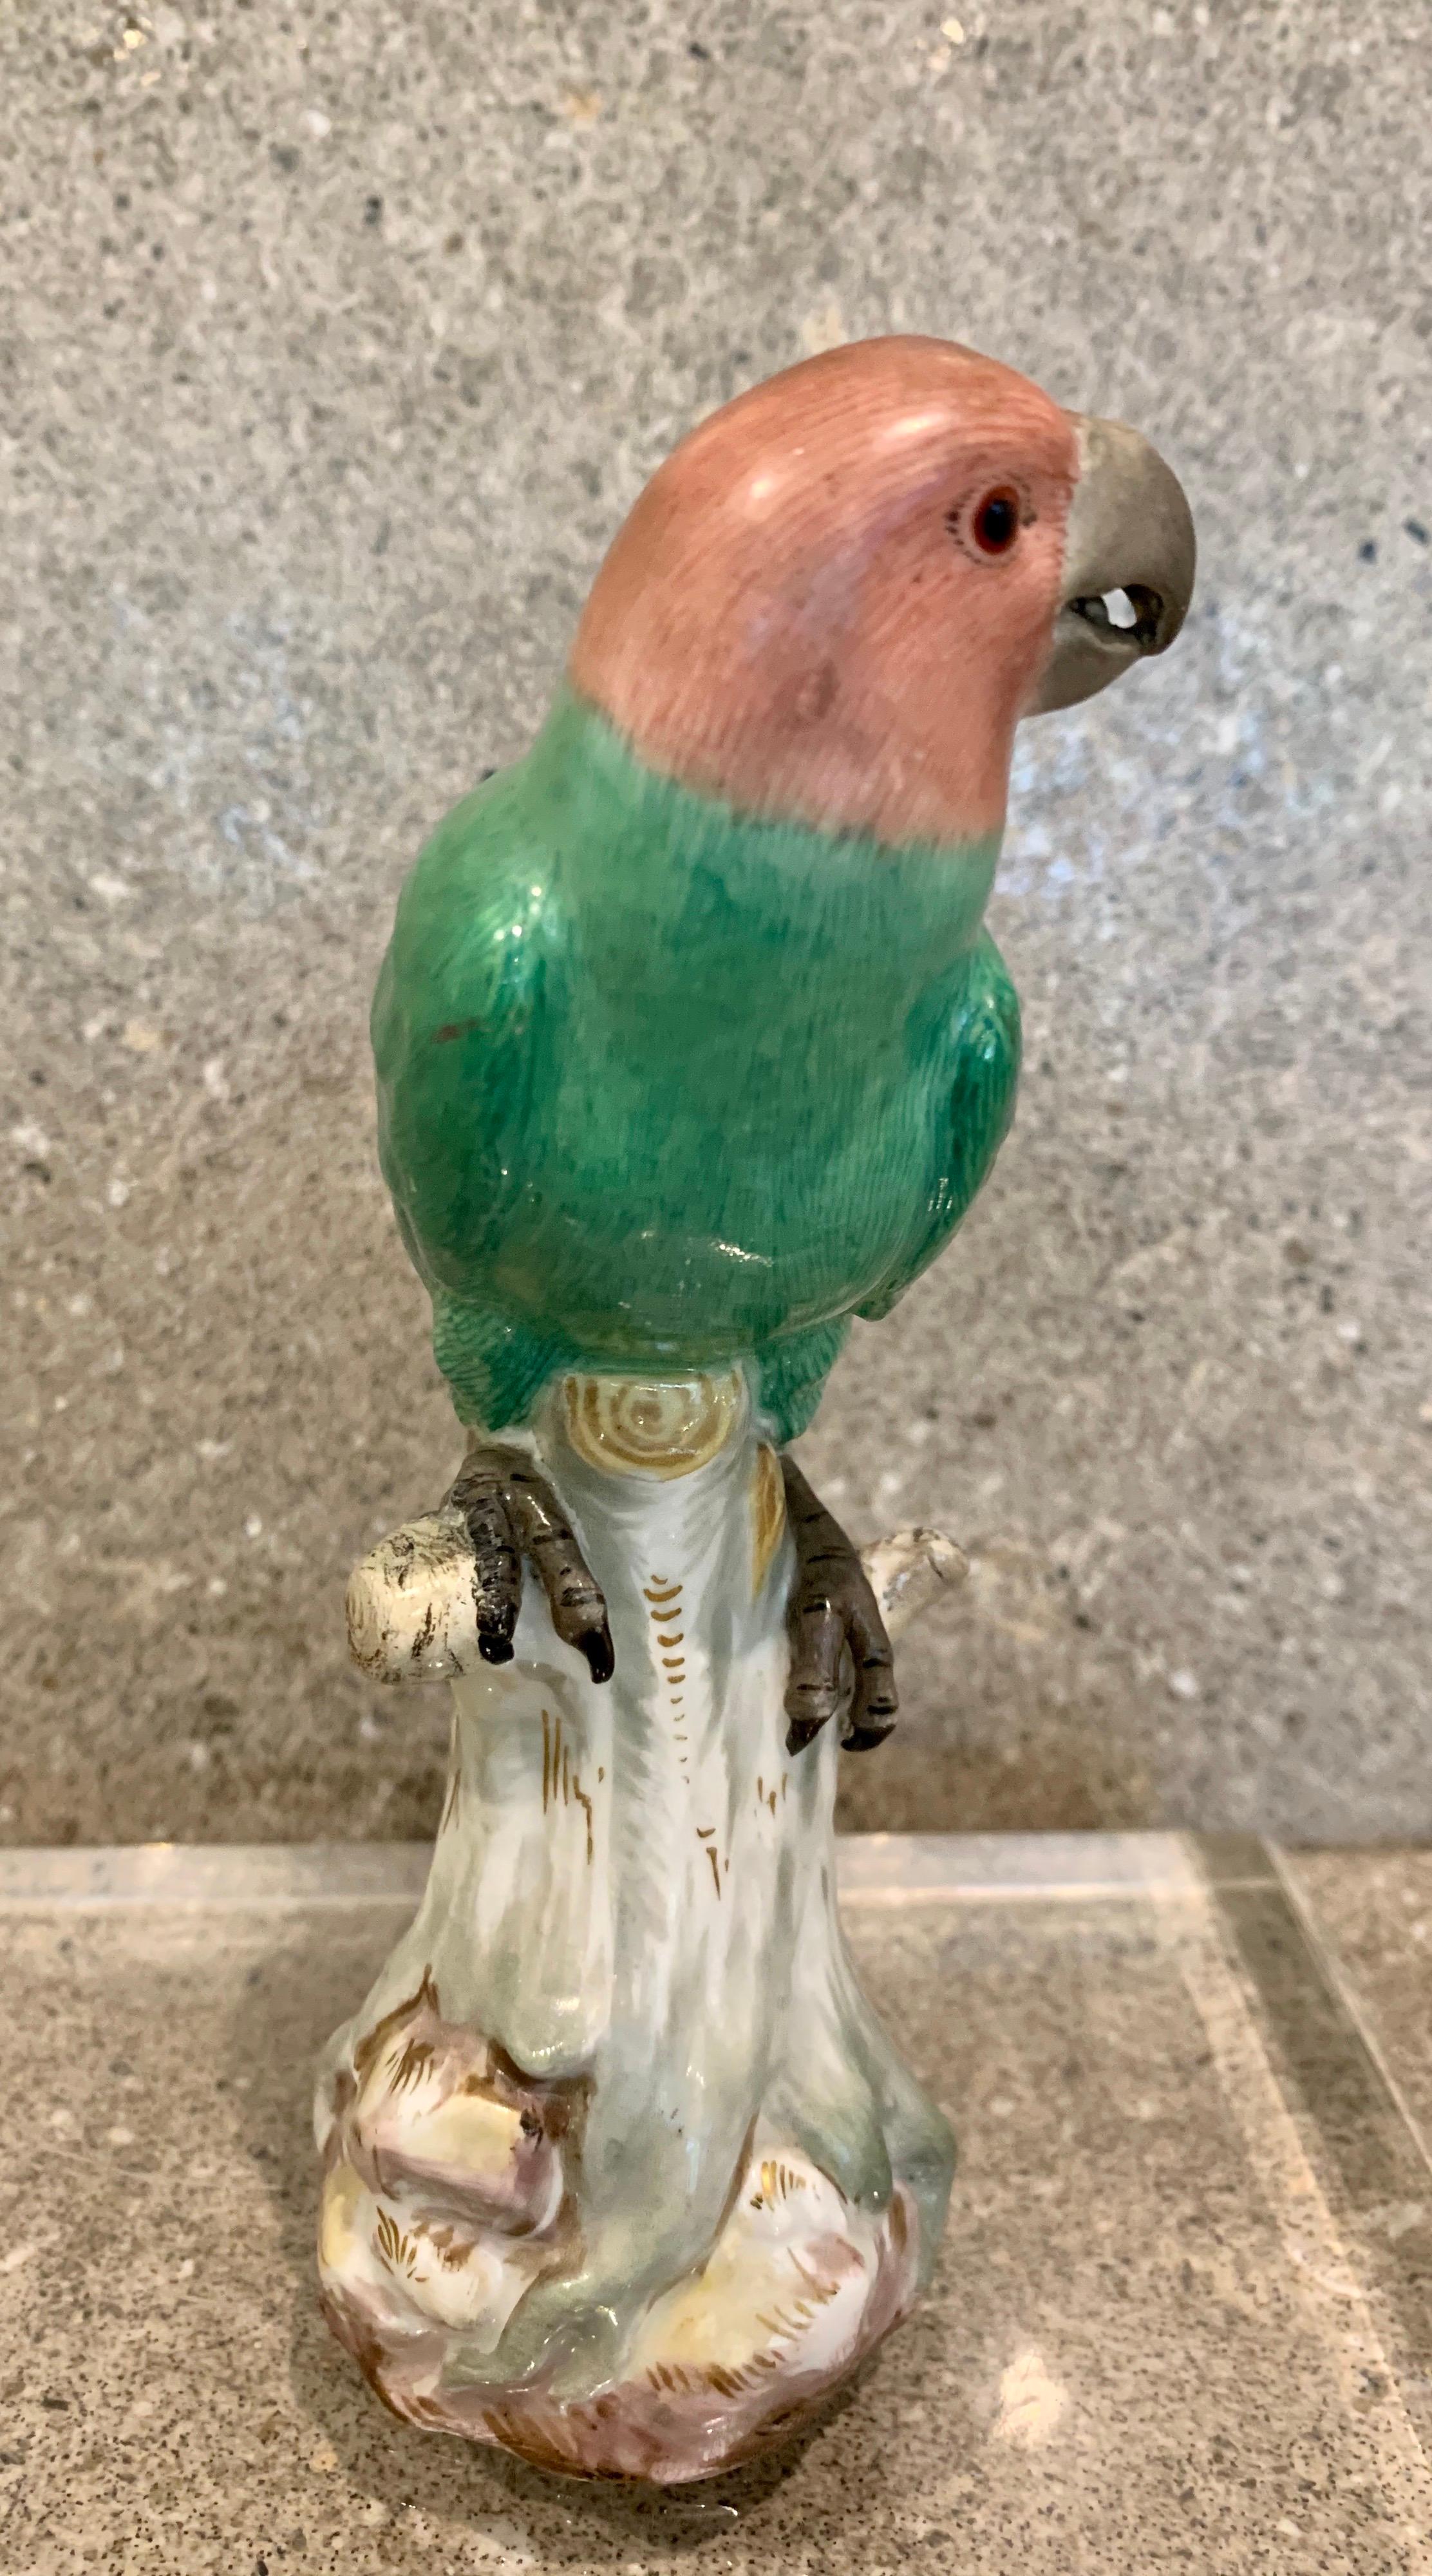 Figure en porcelaine de Meissen du début du 20e siècle représentant un perroquet bien modelé, perché sur un arbre.
Le perroquet, magnifiquement peint dans des émaux vibrants, avec une attention particulière aux détails.
Marque d'épées croisées en